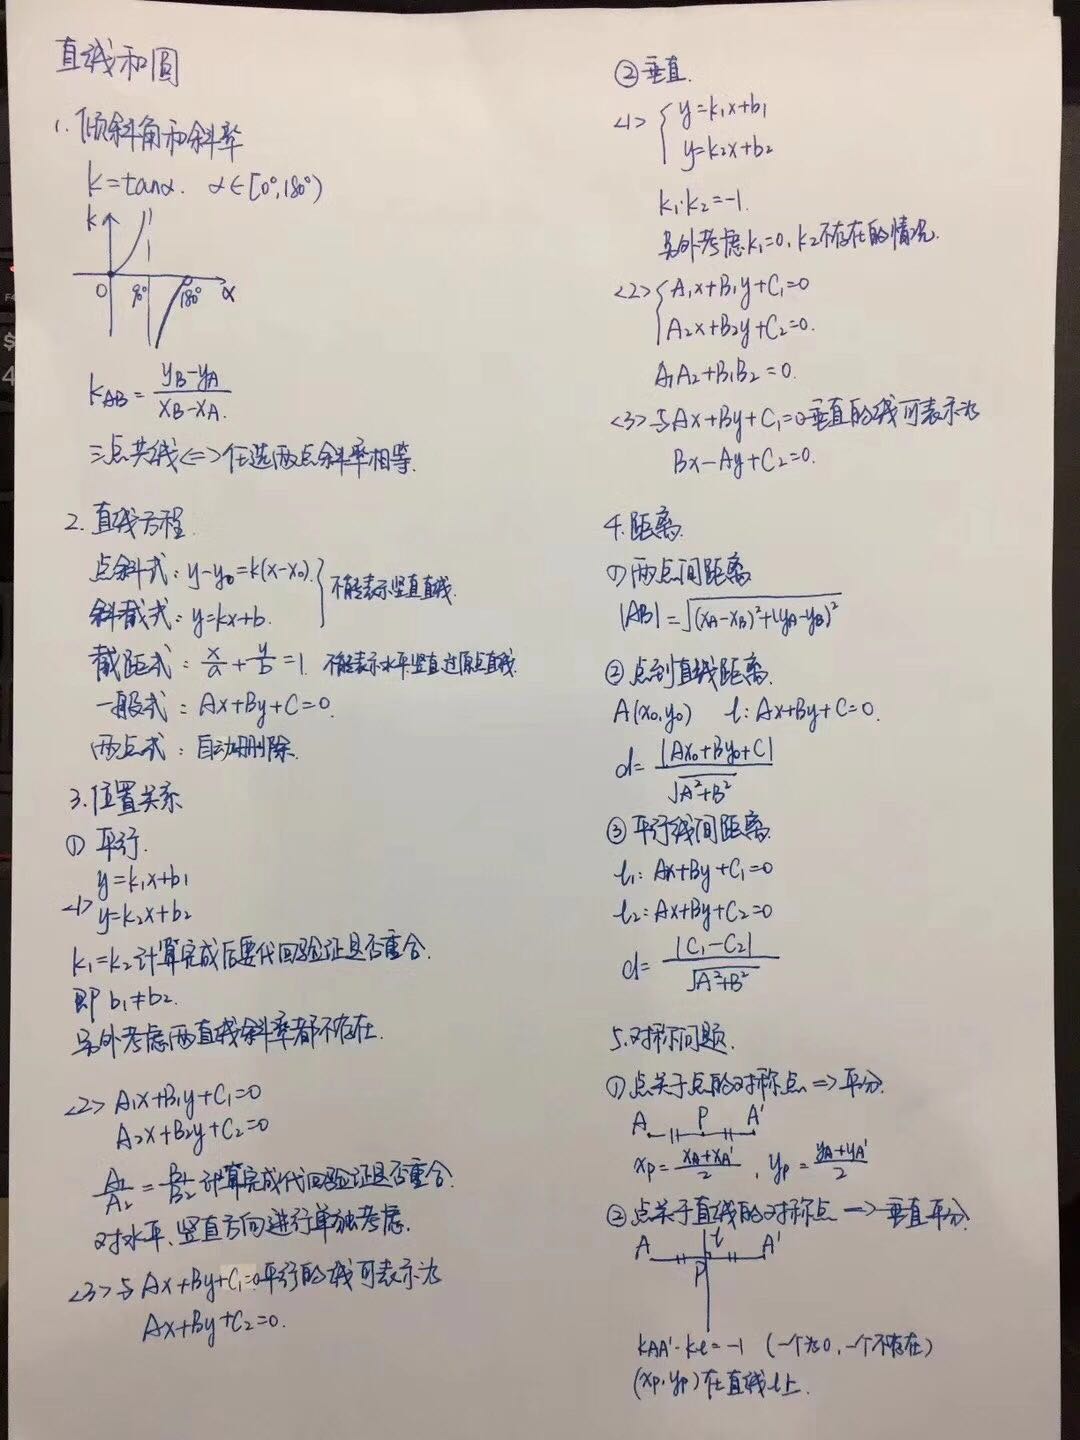 2017-2018年北京高中期中考试数学考点深度解